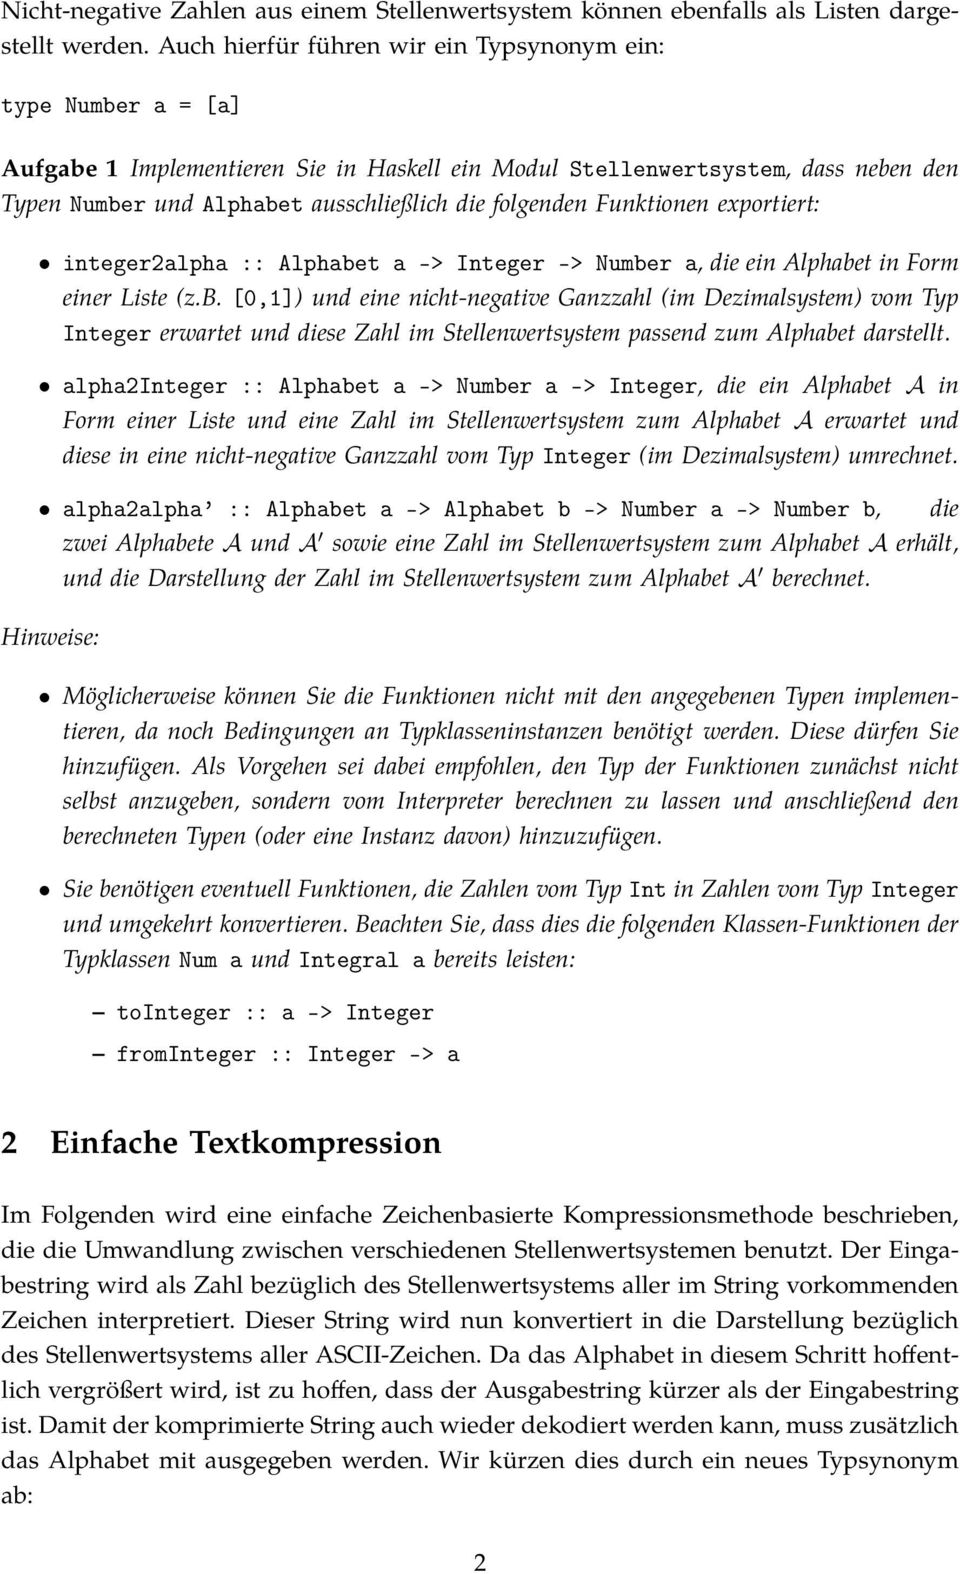 folgenden Funktionen exportiert: integer2alpha :: Alphabe